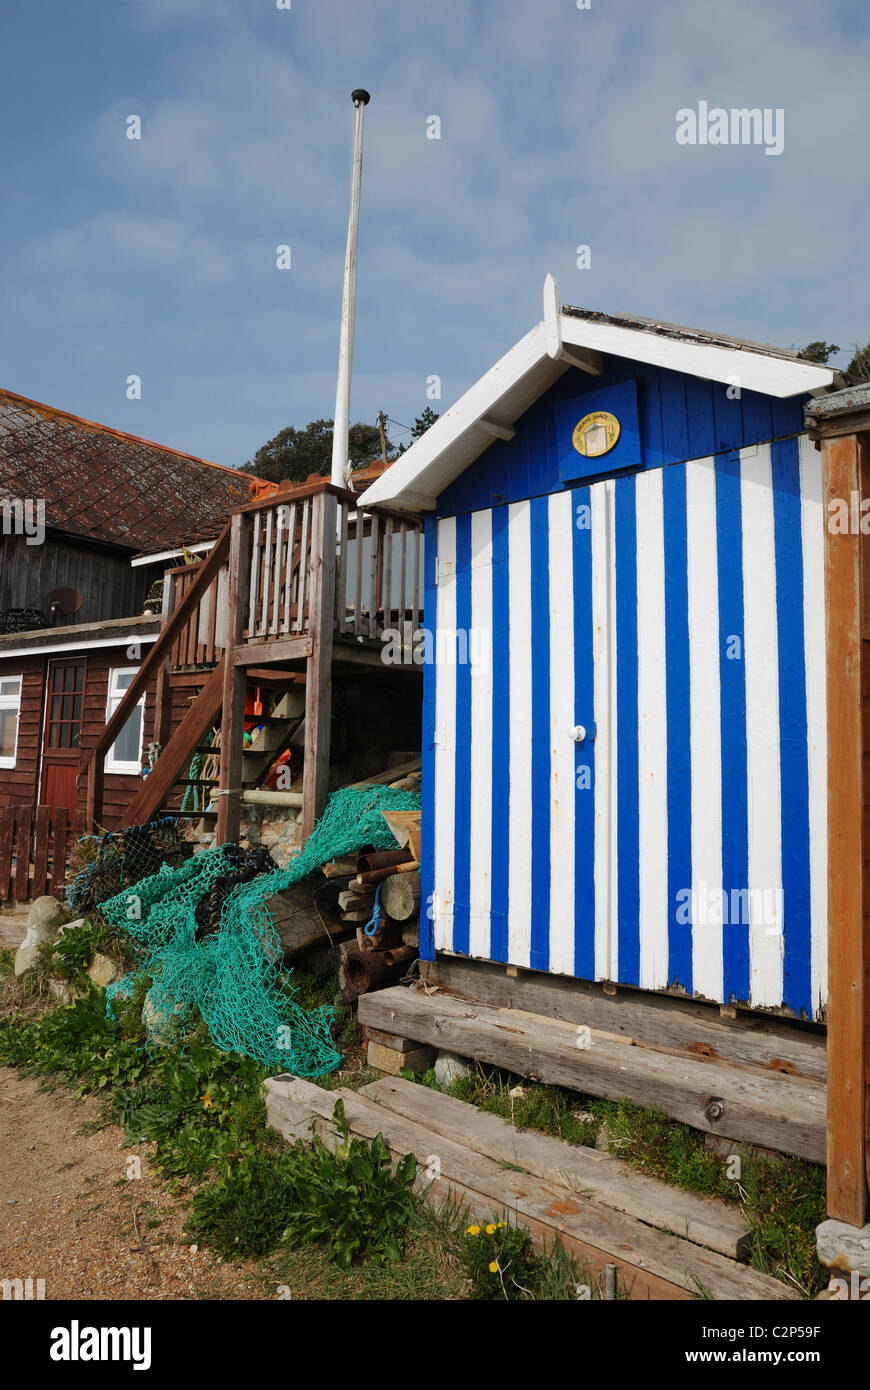 Une cabane de plage à Steephill Cove, Ventnor, île de Wight, Hampshire, Angleterre. Banque D'Images